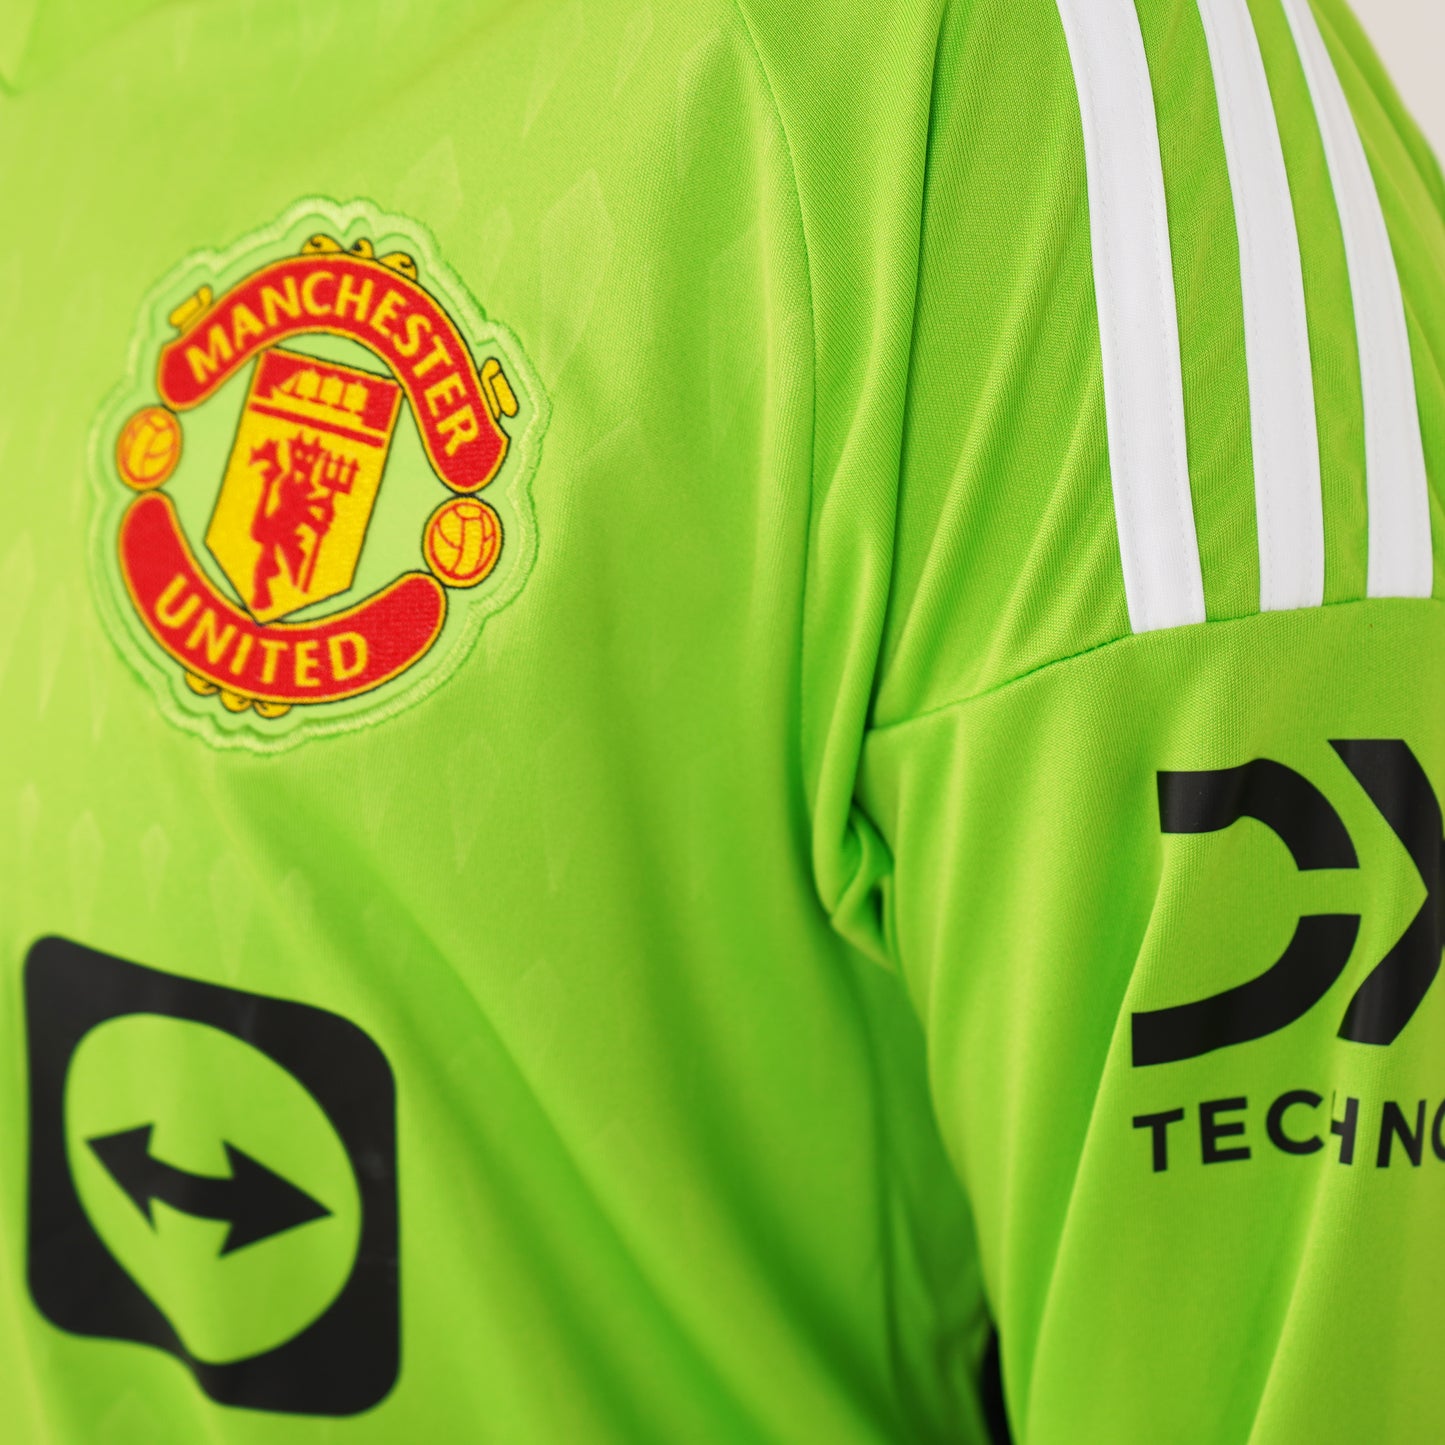 Camiseta Adidas Stadium de corte recto 23/34 del portero local del Manchester United